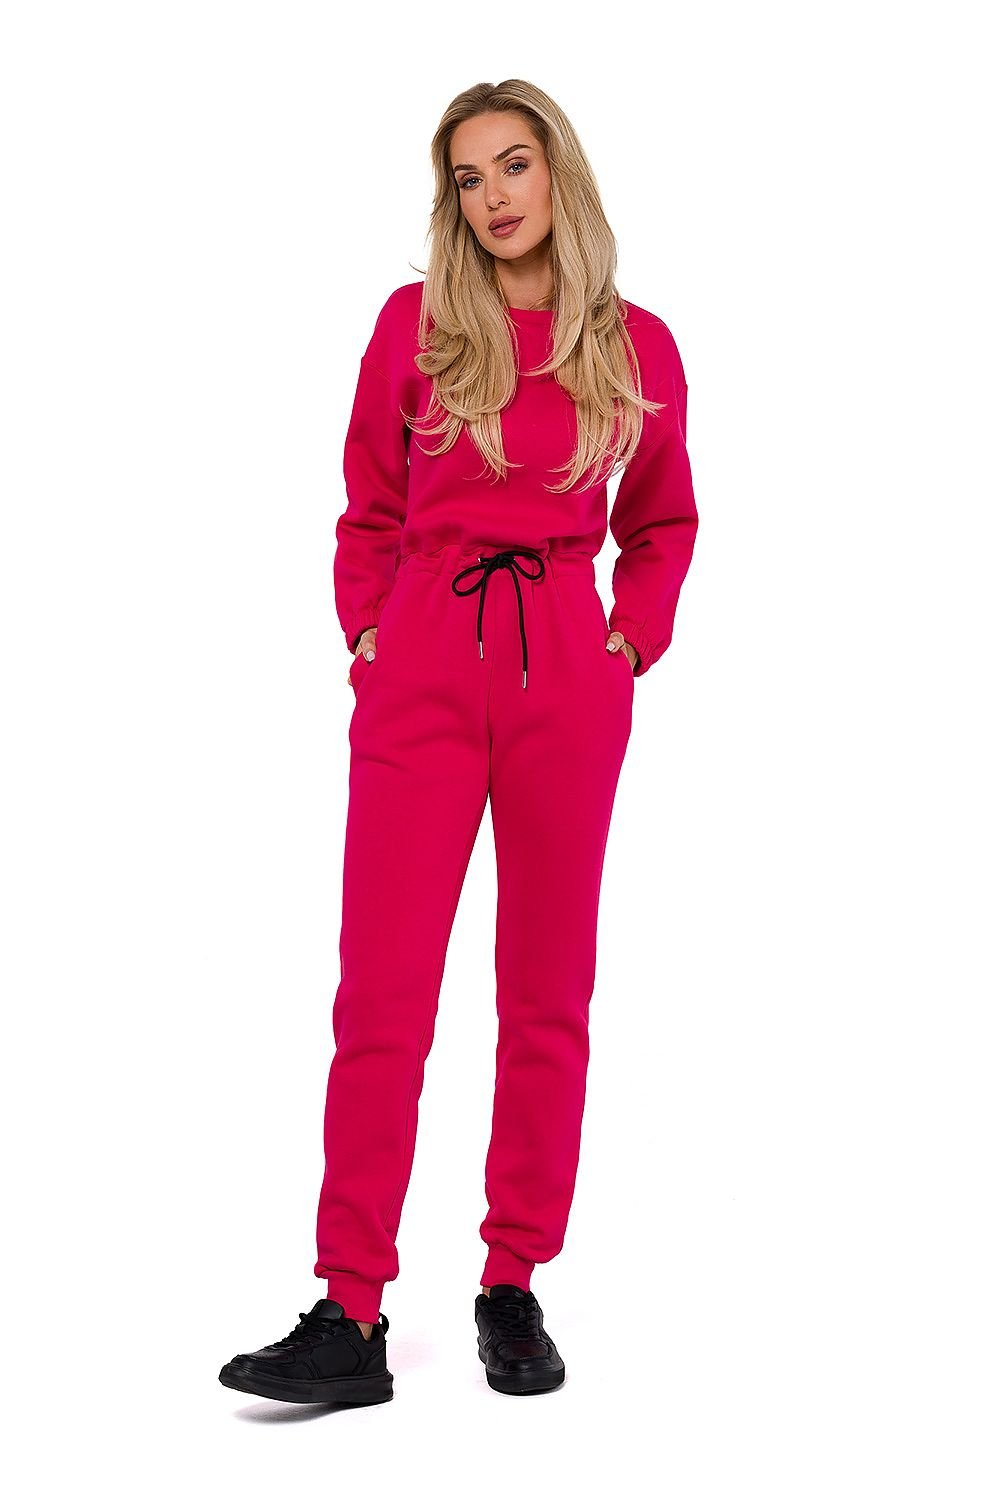 TEEK - Drawstring Waist Sweatsuit Jumpsuit SET TEEK MH pink L 